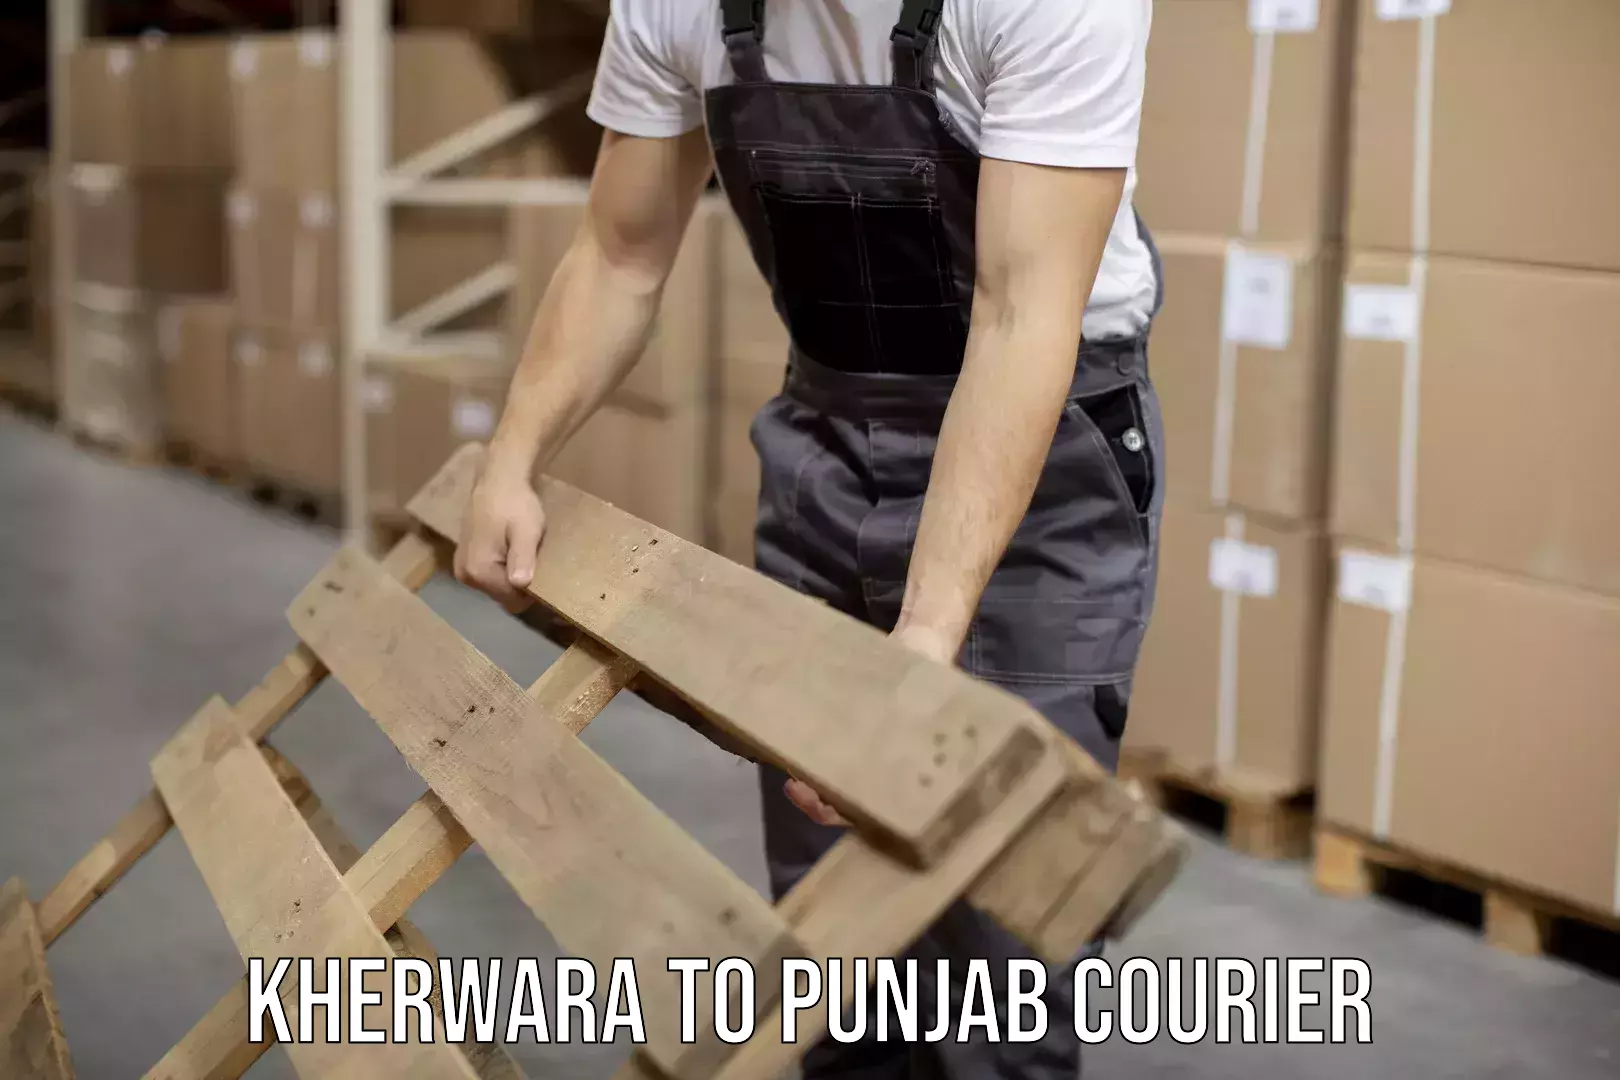 24/7 courier service Kherwara to Punjab